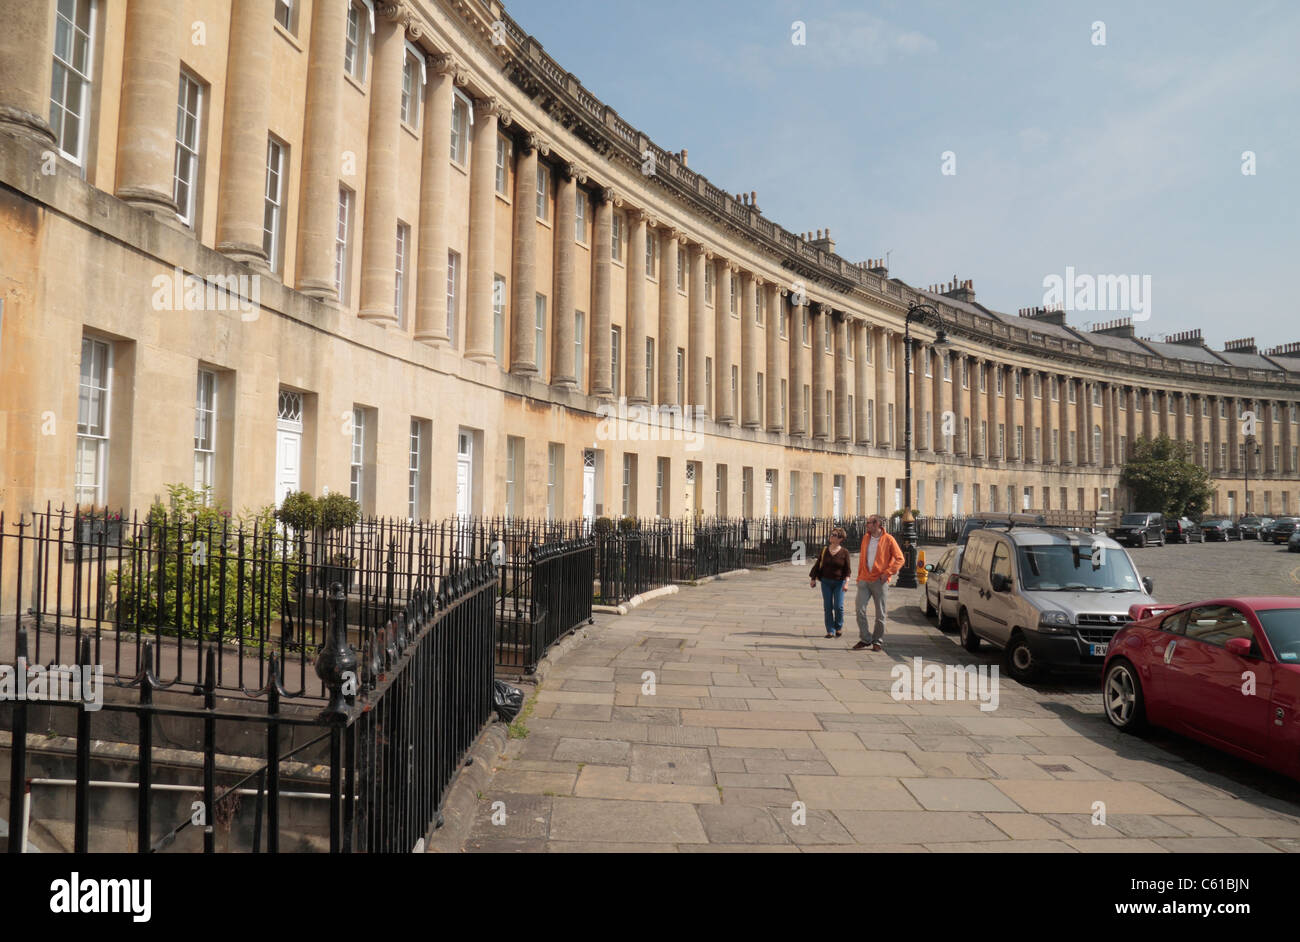 Ligne de propriétés mitoyennes dans le Royal Crescent, Bath, Angleterre. Banque D'Images